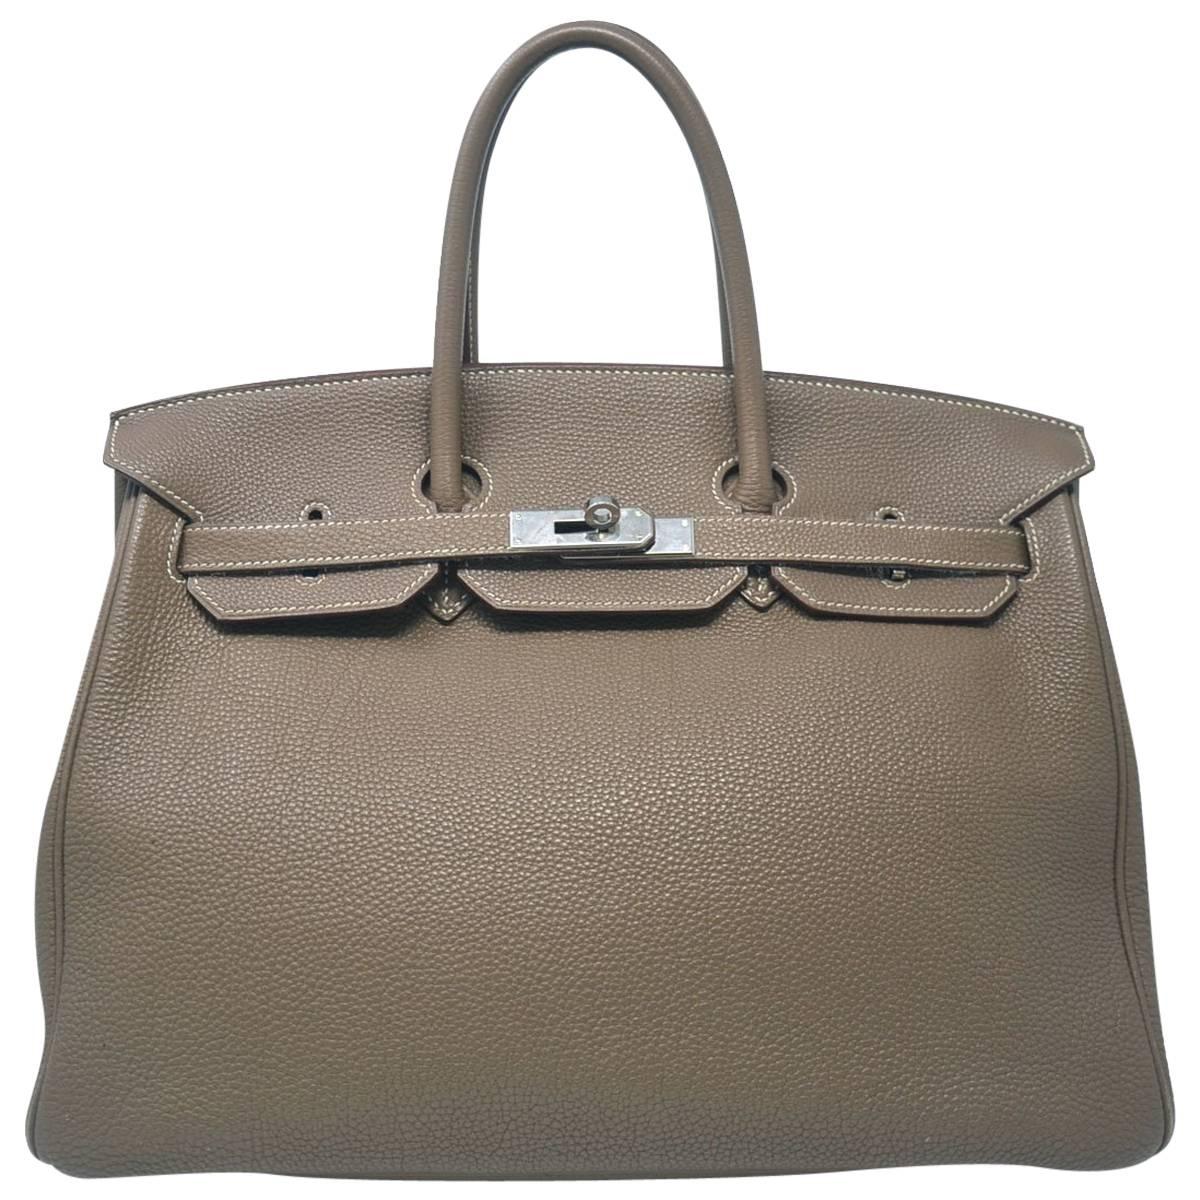 Hermes Birkin Togo 35 Taupe Handbag